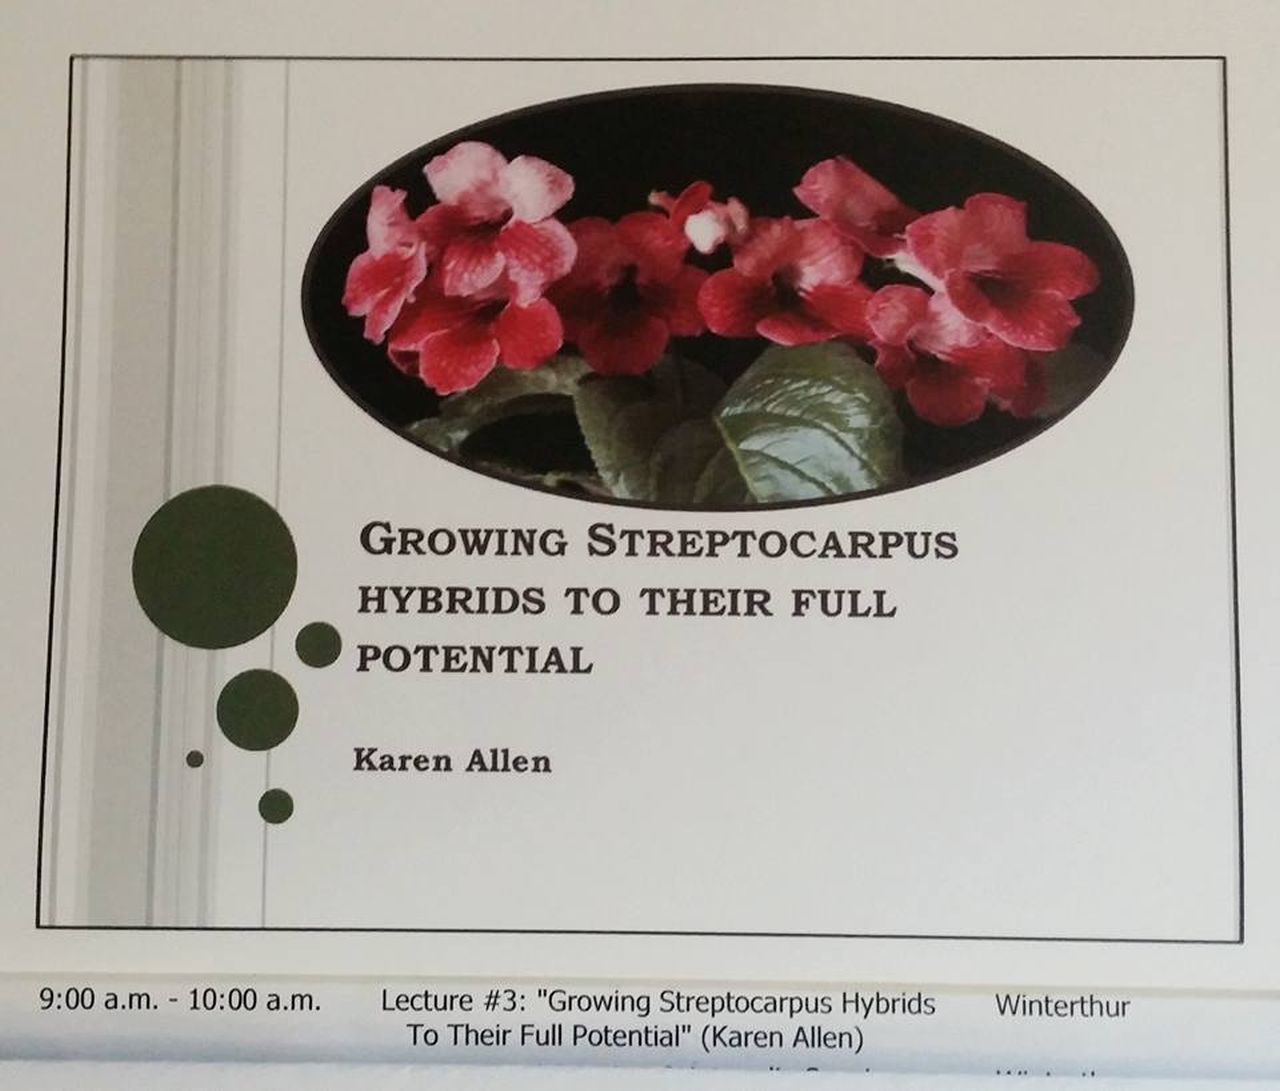 The Streptocarpus presentation by Karen Allen